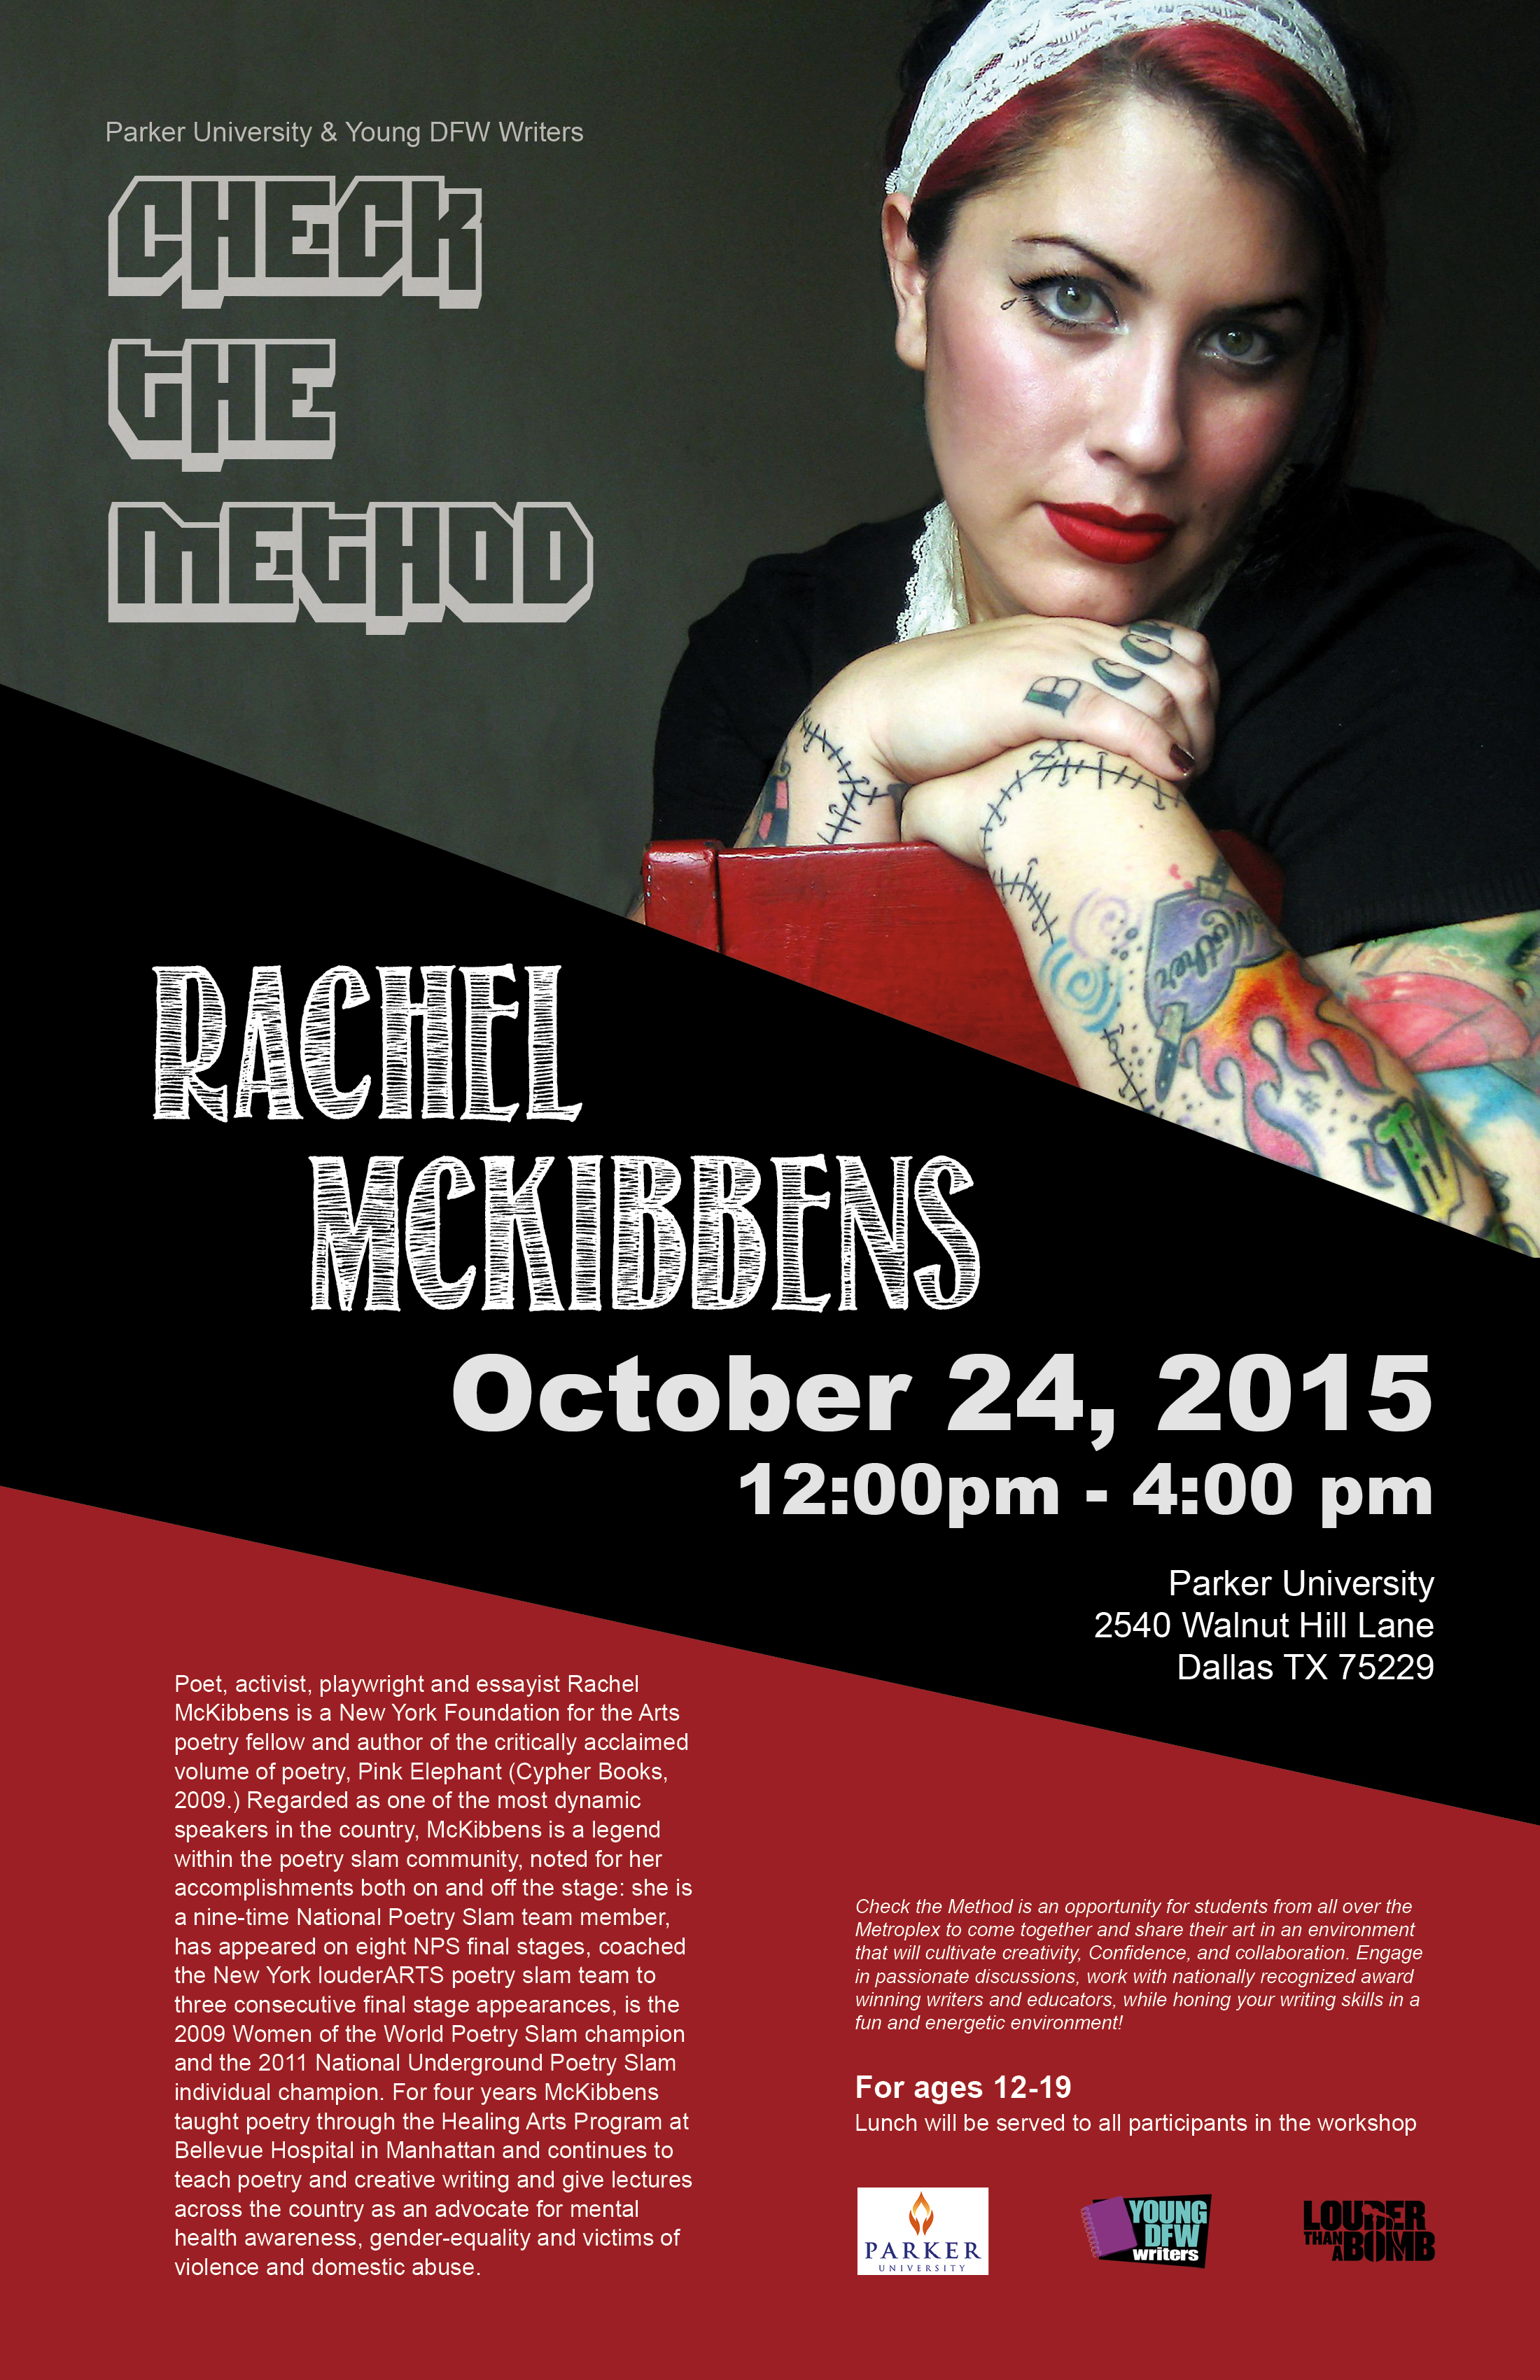 RachelMcKibbens_Oct2015.jpg